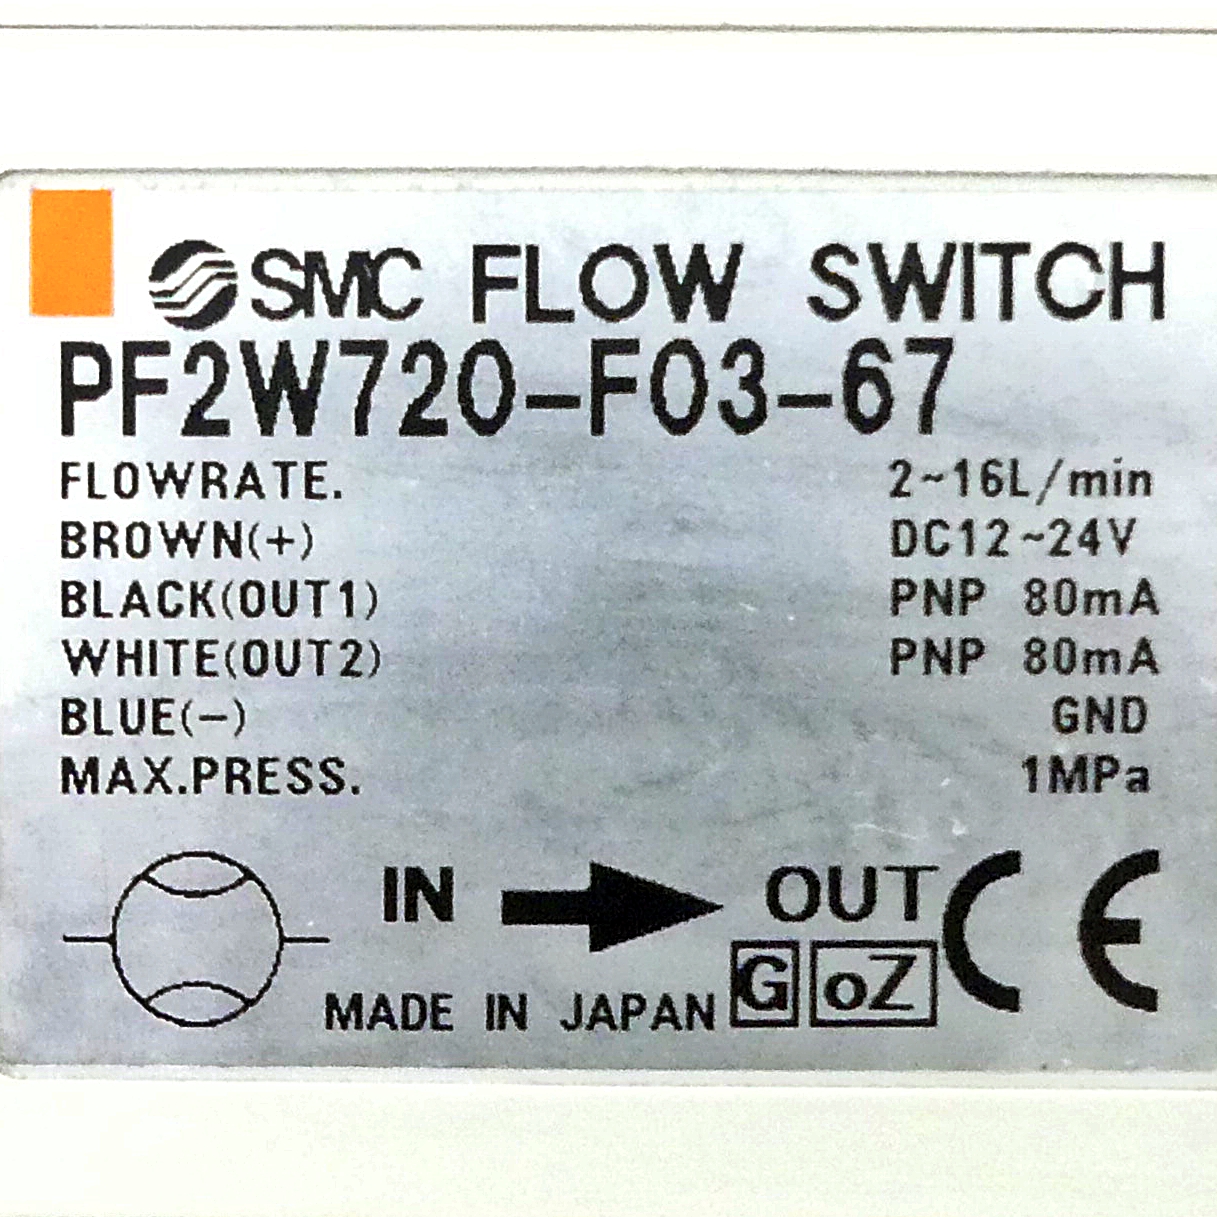 Digital Flow Switch PF2W720-F03-67 